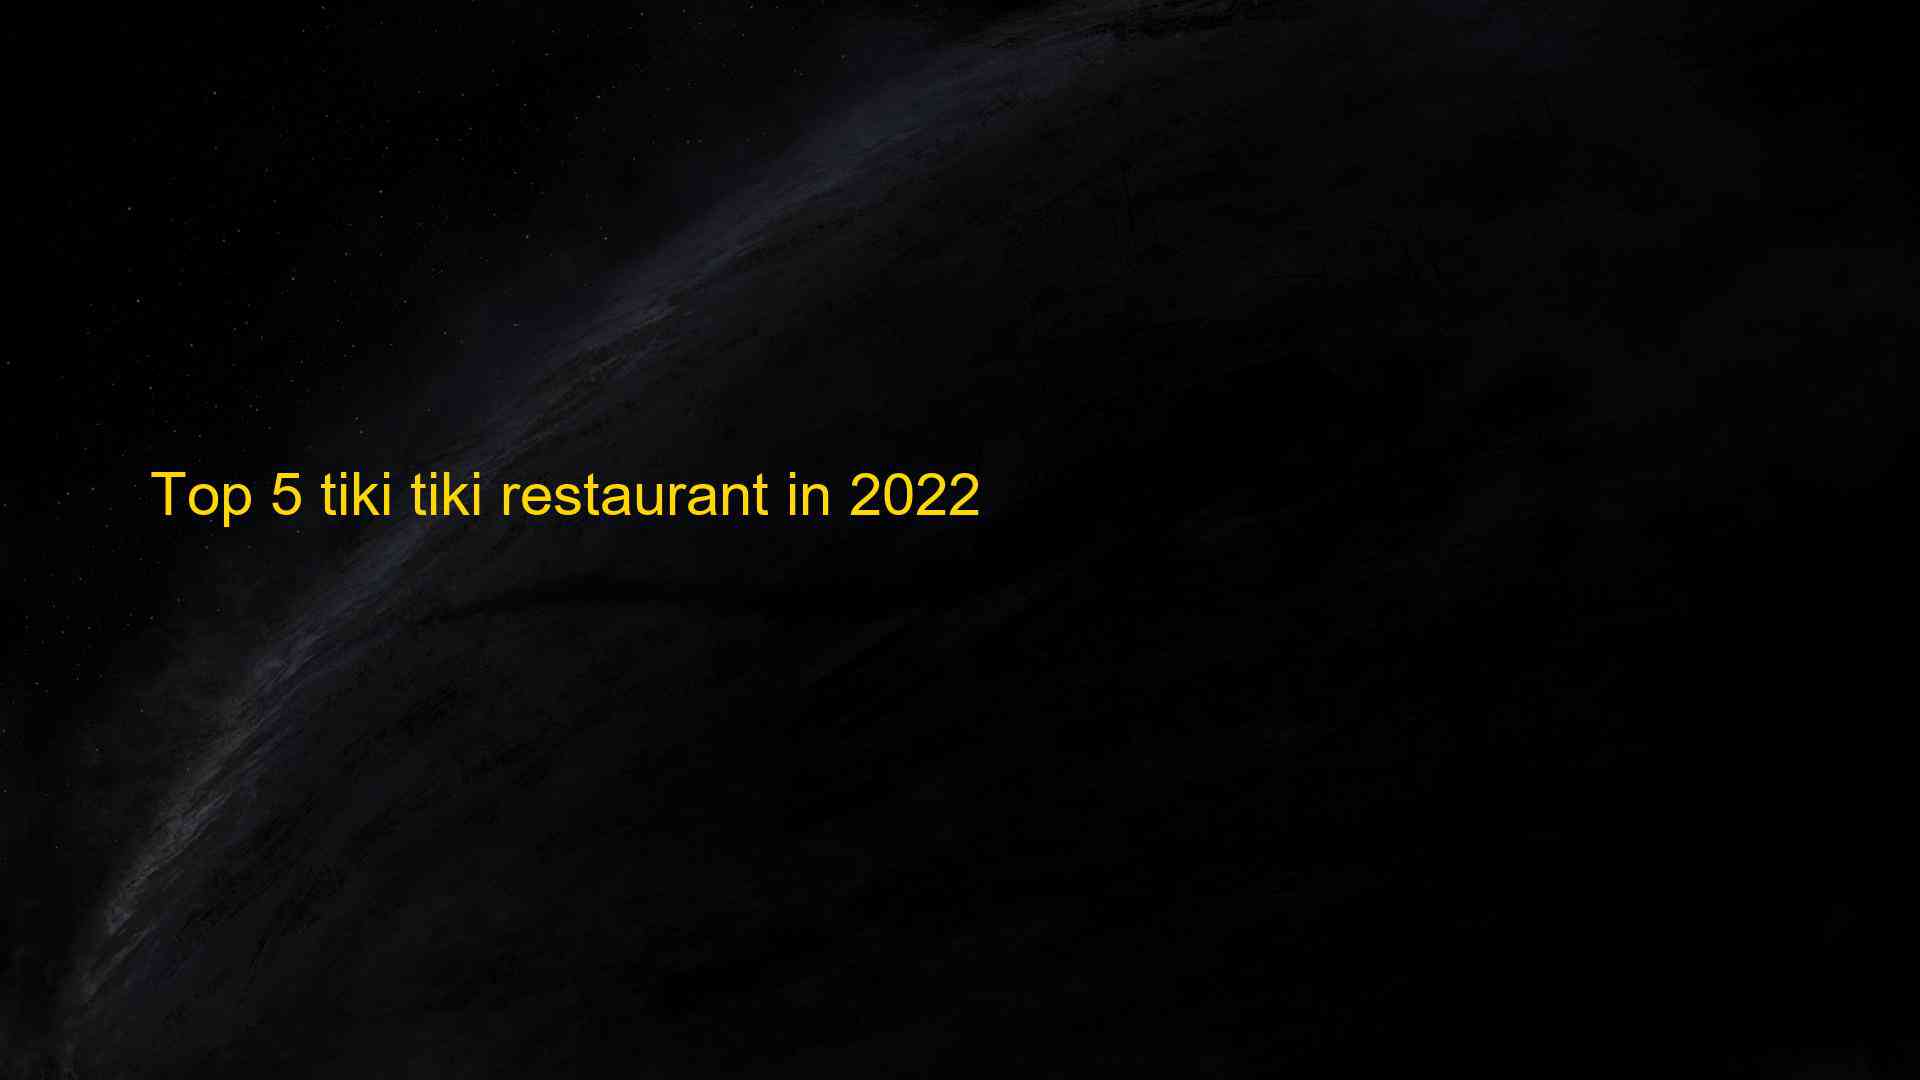 Top 5 tiki tiki restaurant in 2022 1662843632